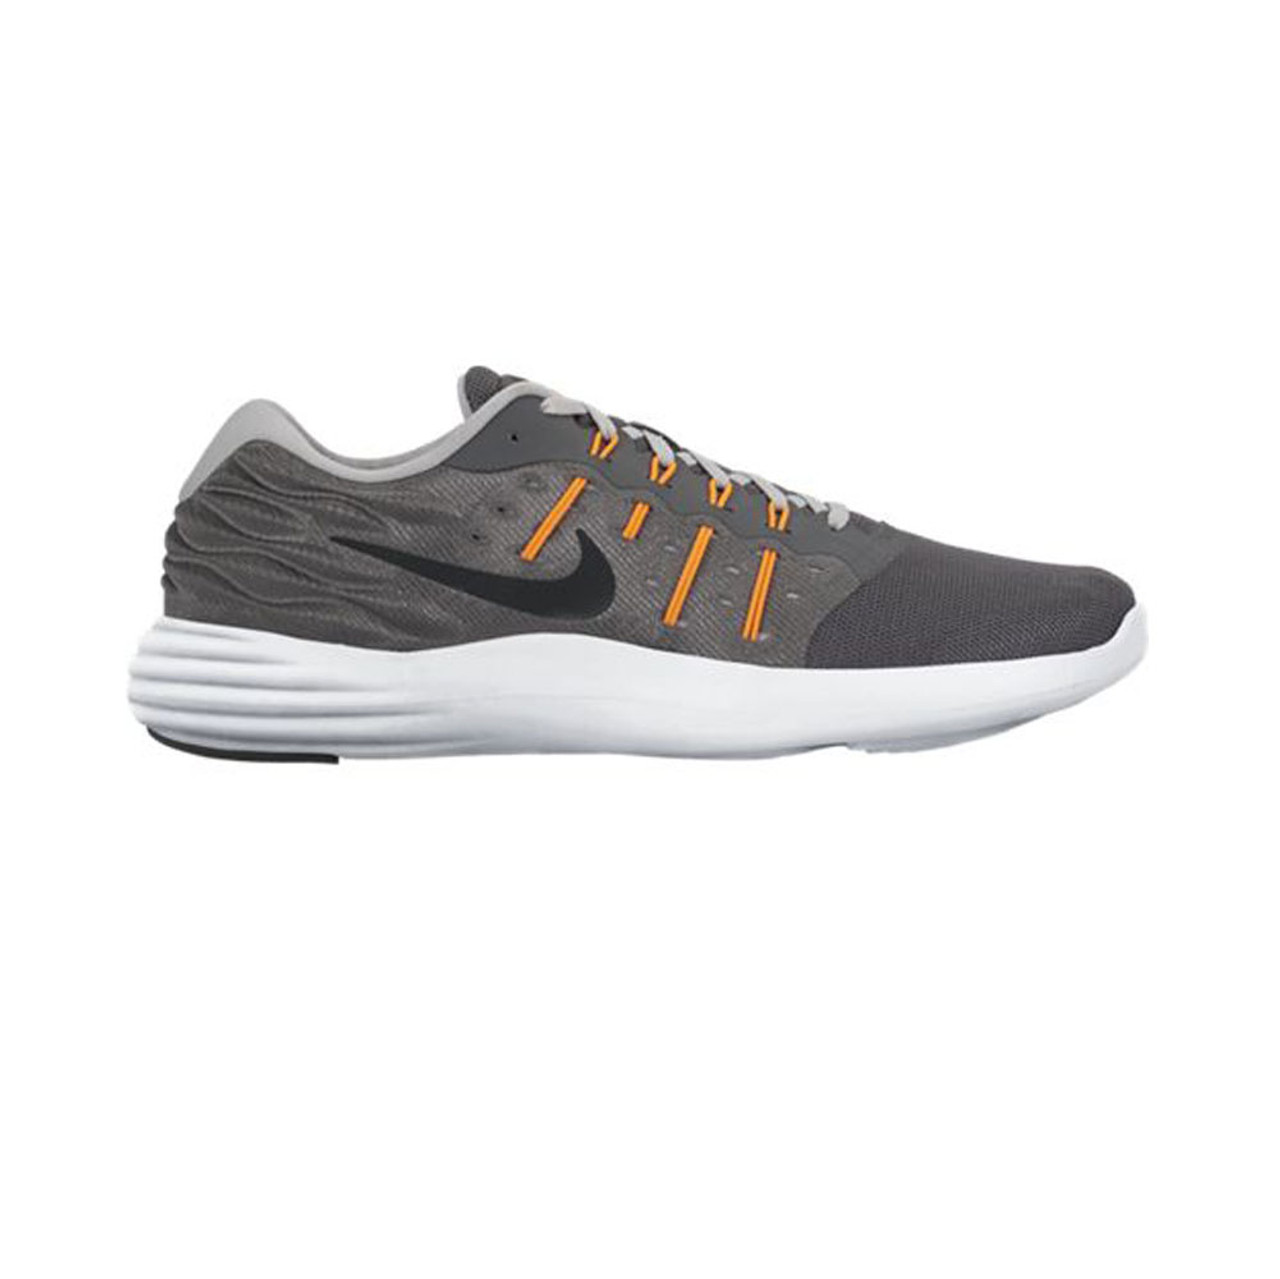 Nike Men's Lunarstelos Running Shoe - Grey | Discount Nike Men's Athletic &  More - Shoolu.com | Shoolu.com